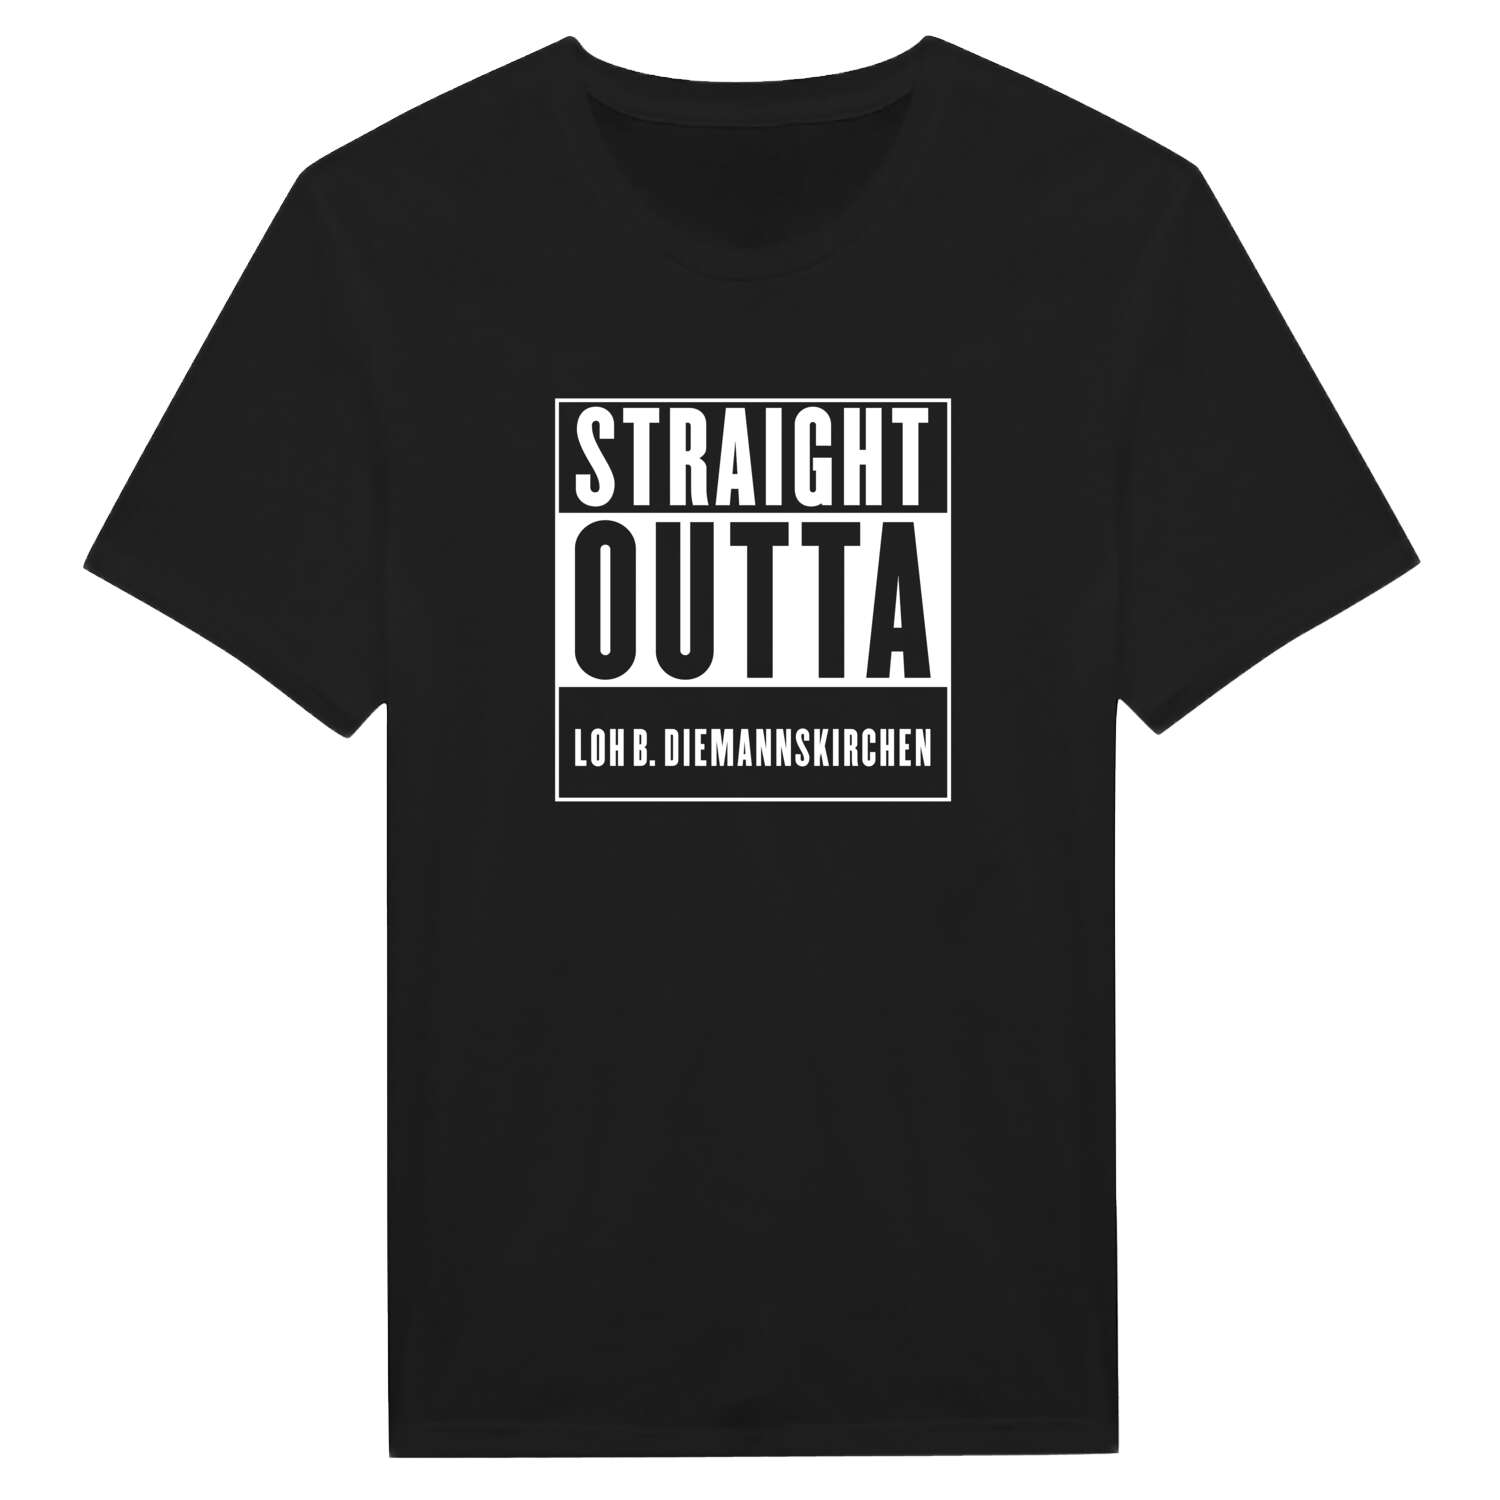 Loh b. Diemannskirchen T-Shirt »Straight Outta«